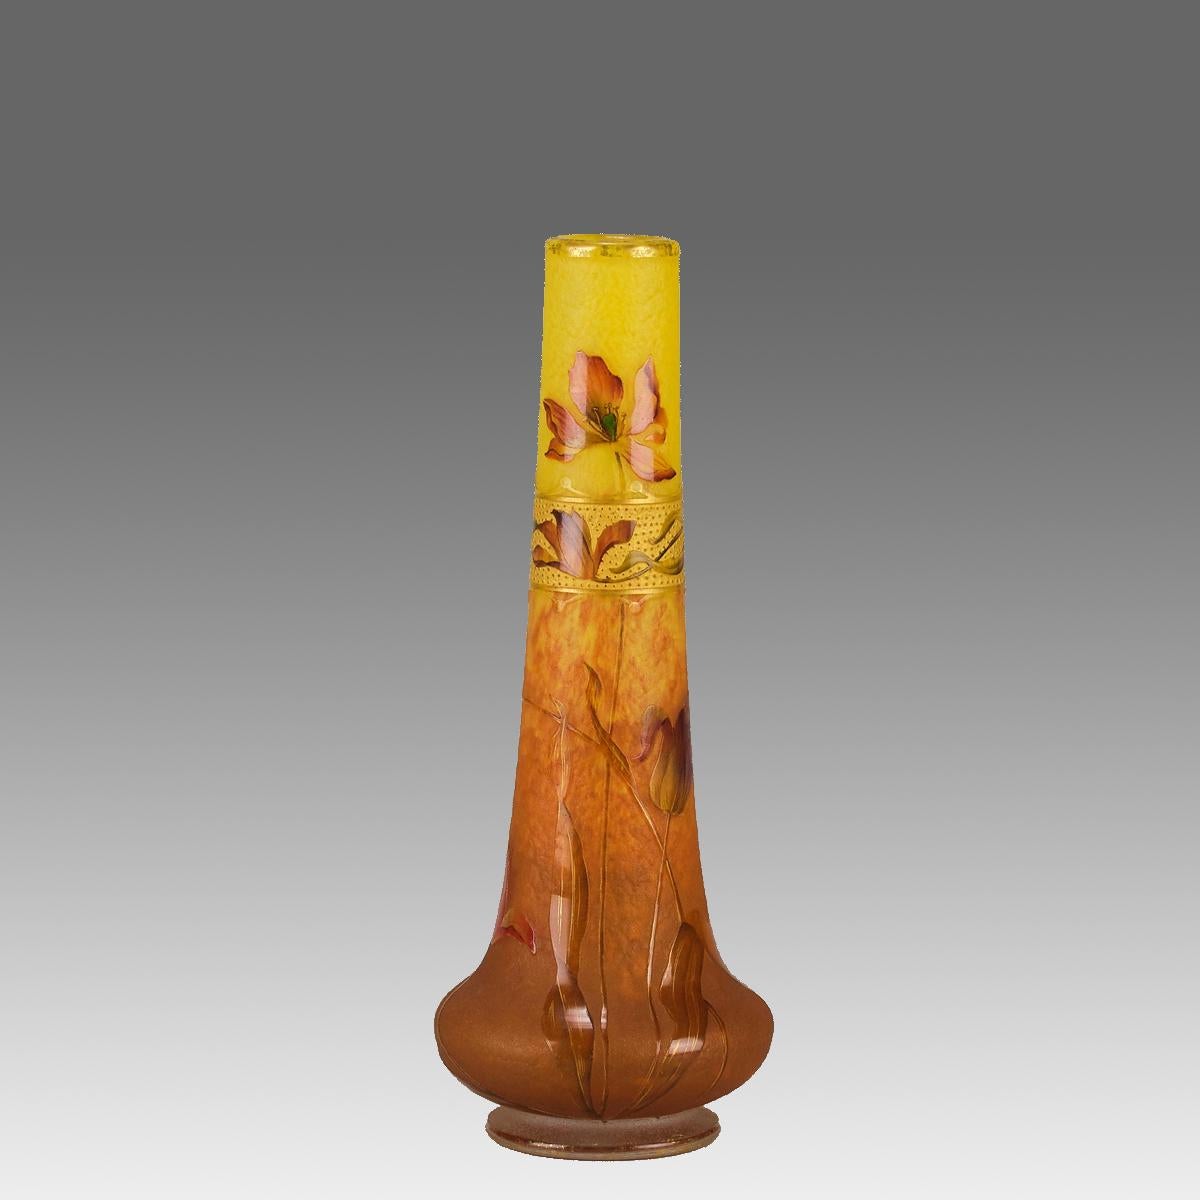 Eine sehr attraktive Jugendstil-Kamee-Glasvase aus dem frühen 20. Jahrhundert, geätzt und emailliert mit blühenden Mohnblumen auf einem warmen gelben bis orangefarbenen Feld. Das Design wurde durch die Vergoldung der Oberfläche verstärkt, um eine